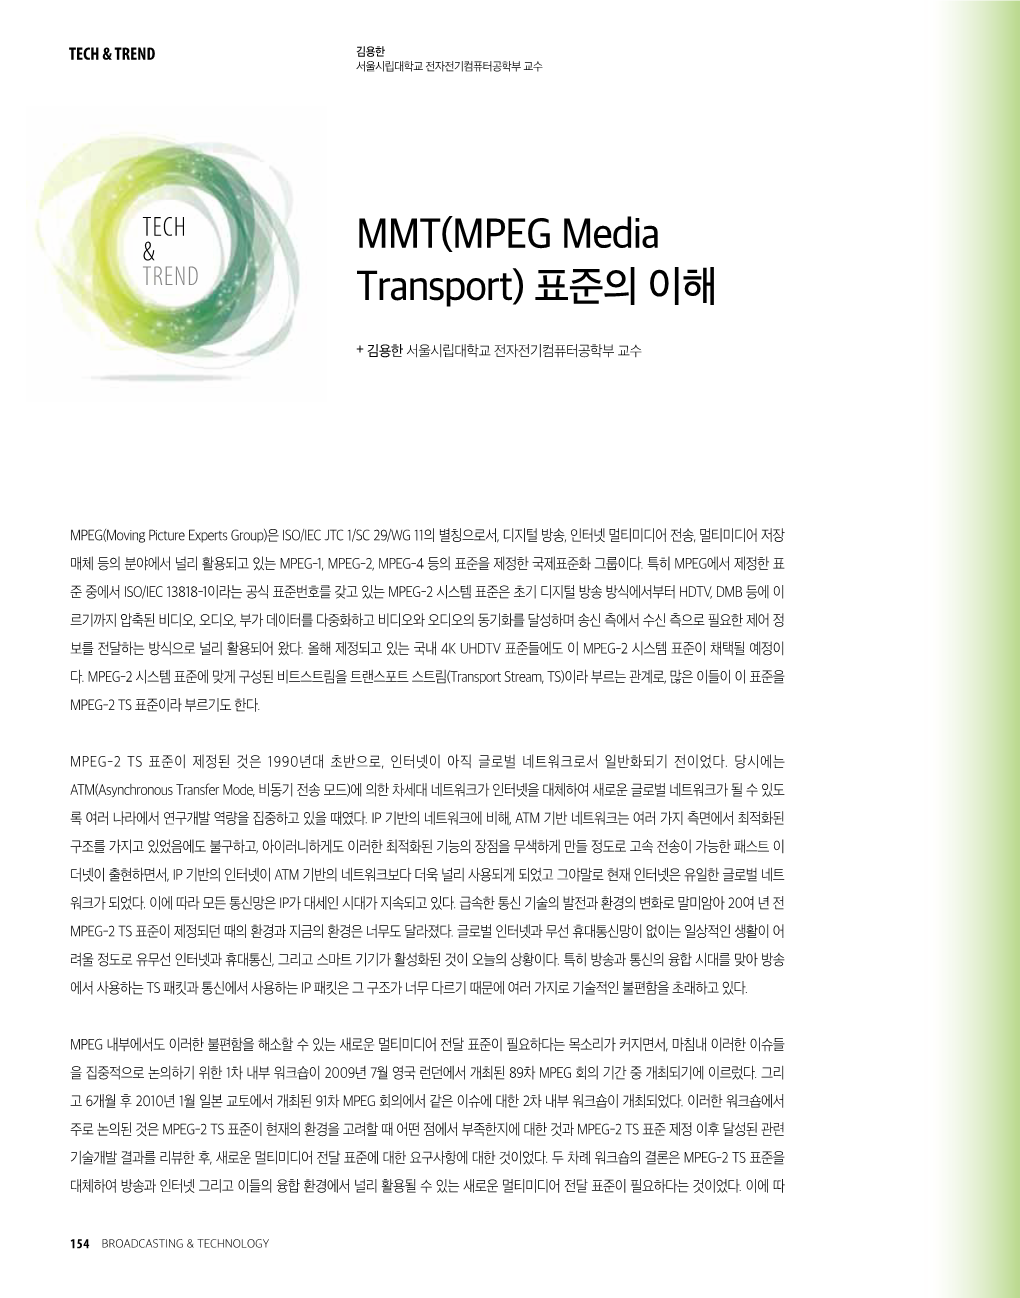 MMT(MPEG Media Transport)